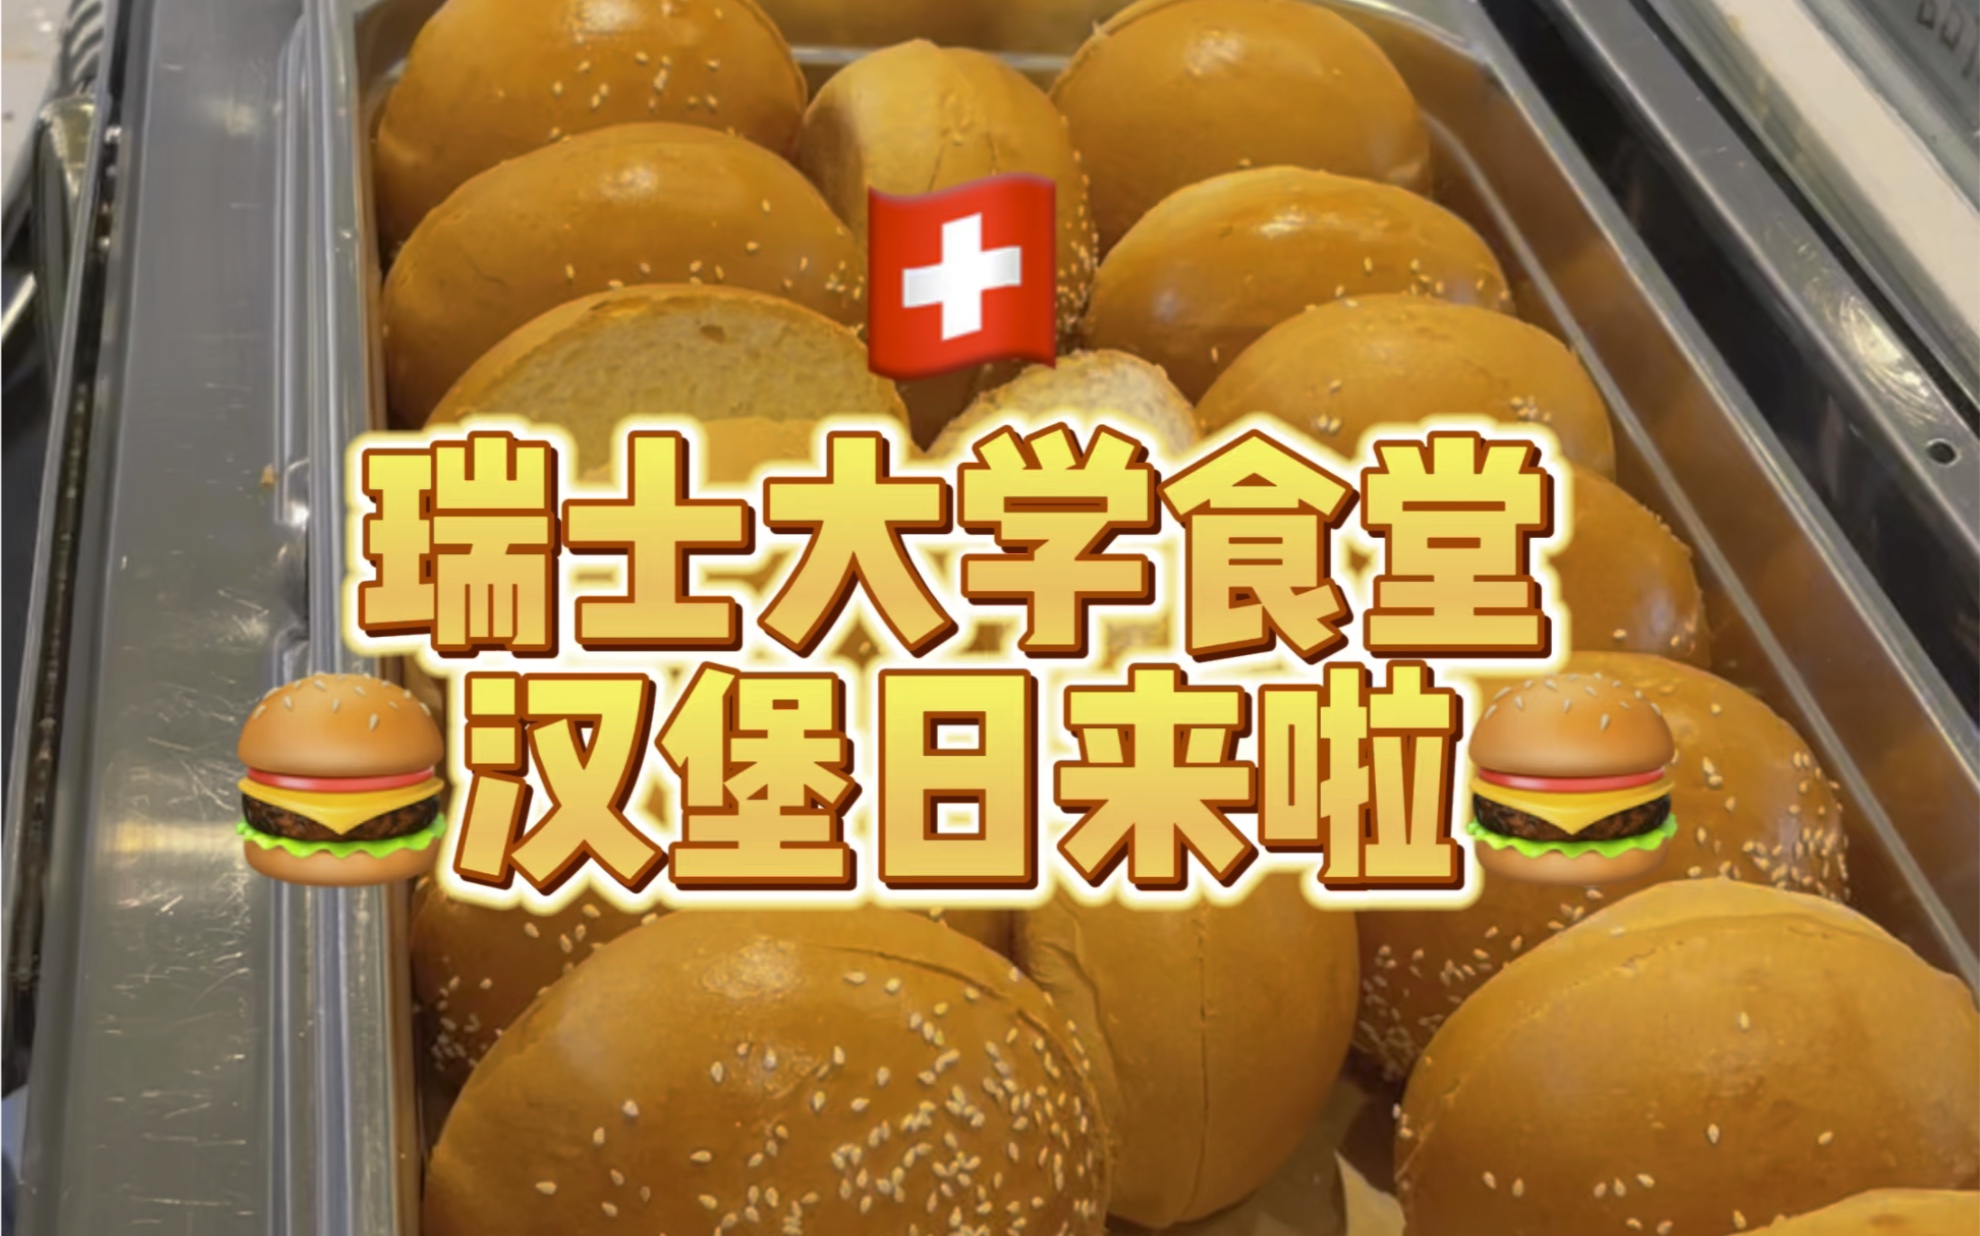 我在「瑞士大学食堂」吃汉堡自助！美式牛肉堡随便吃！